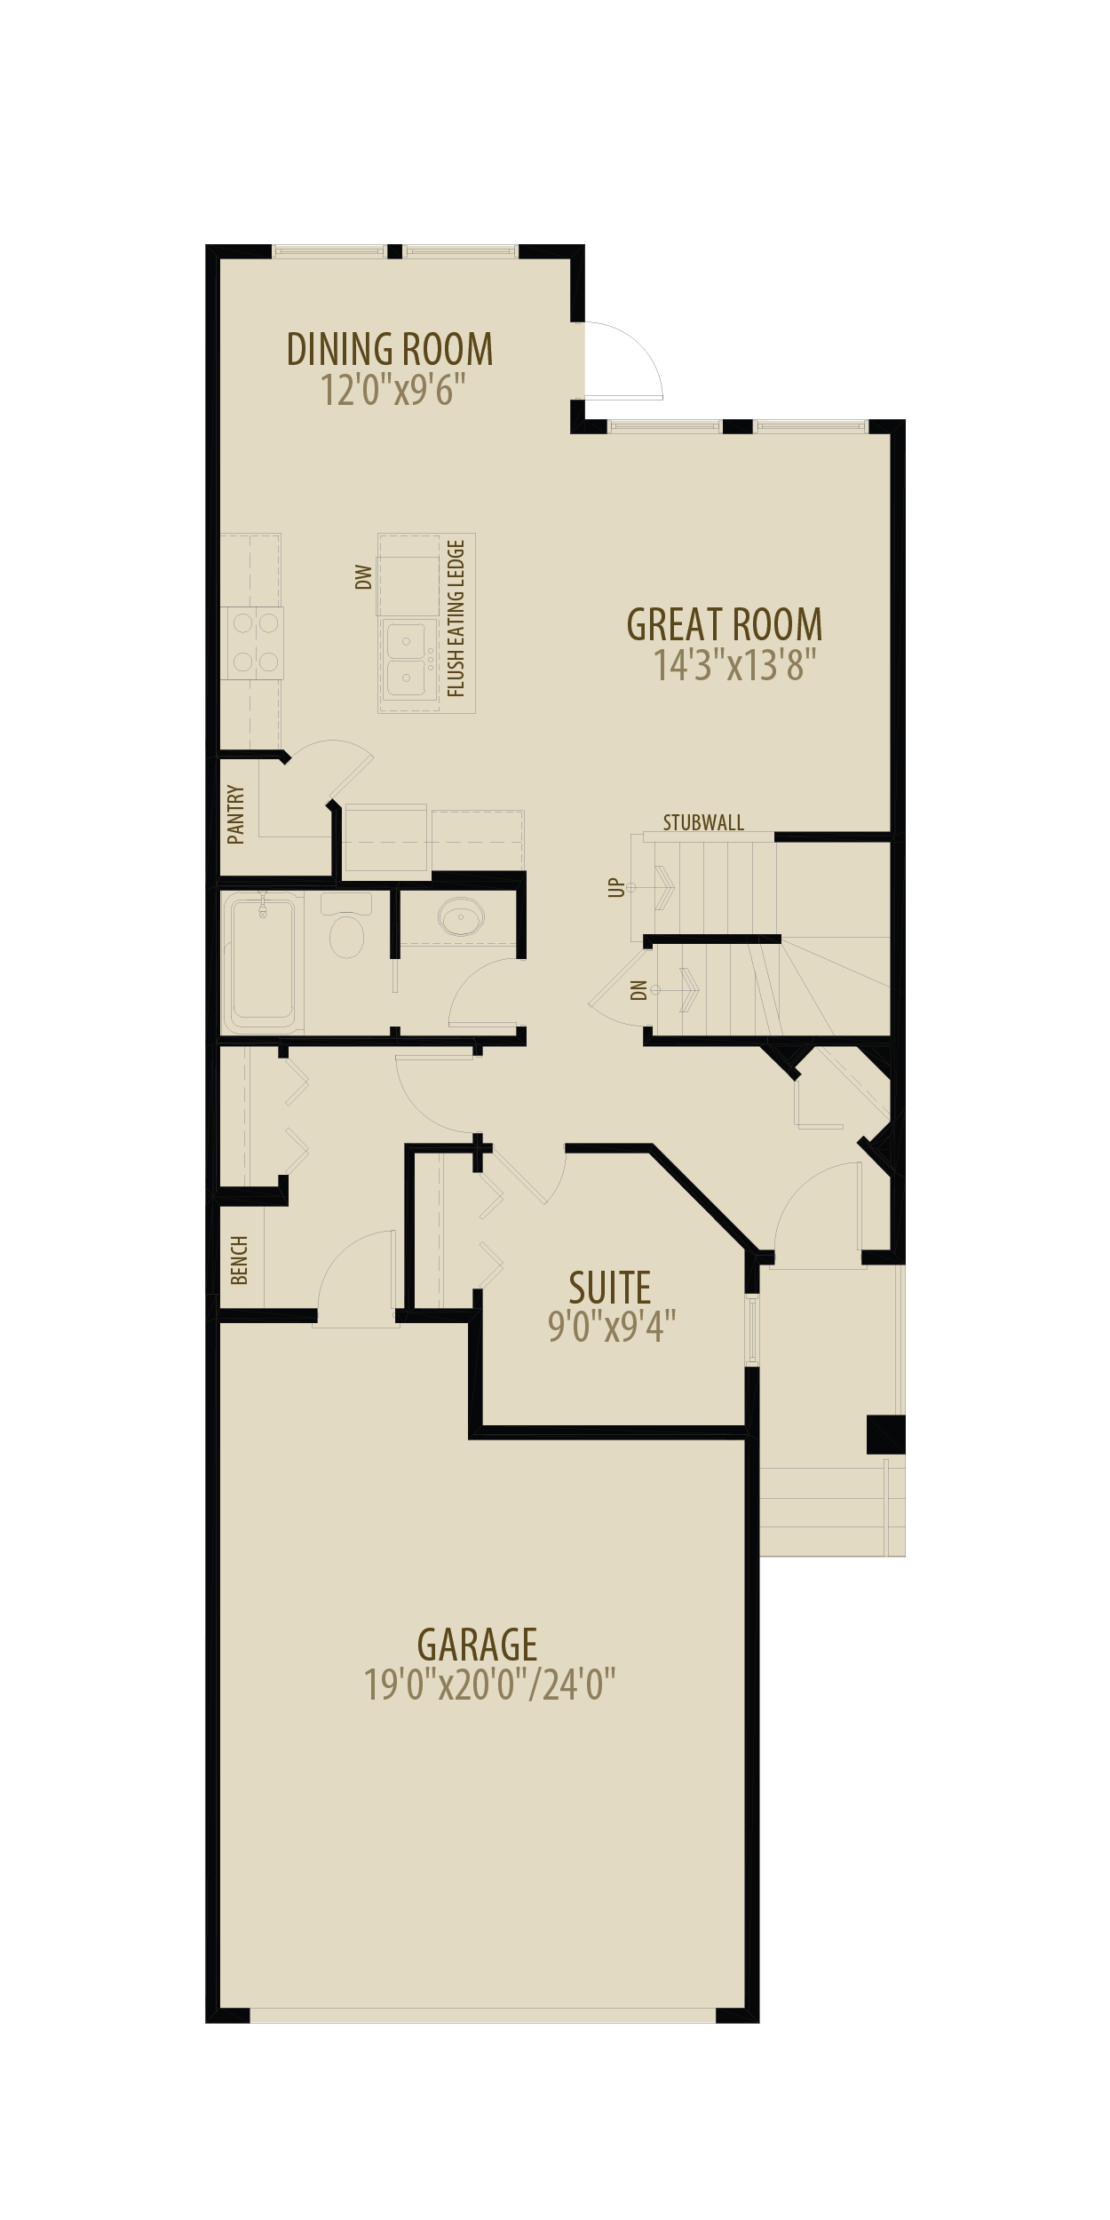 Main Floor Suite Adds 40 sq ft